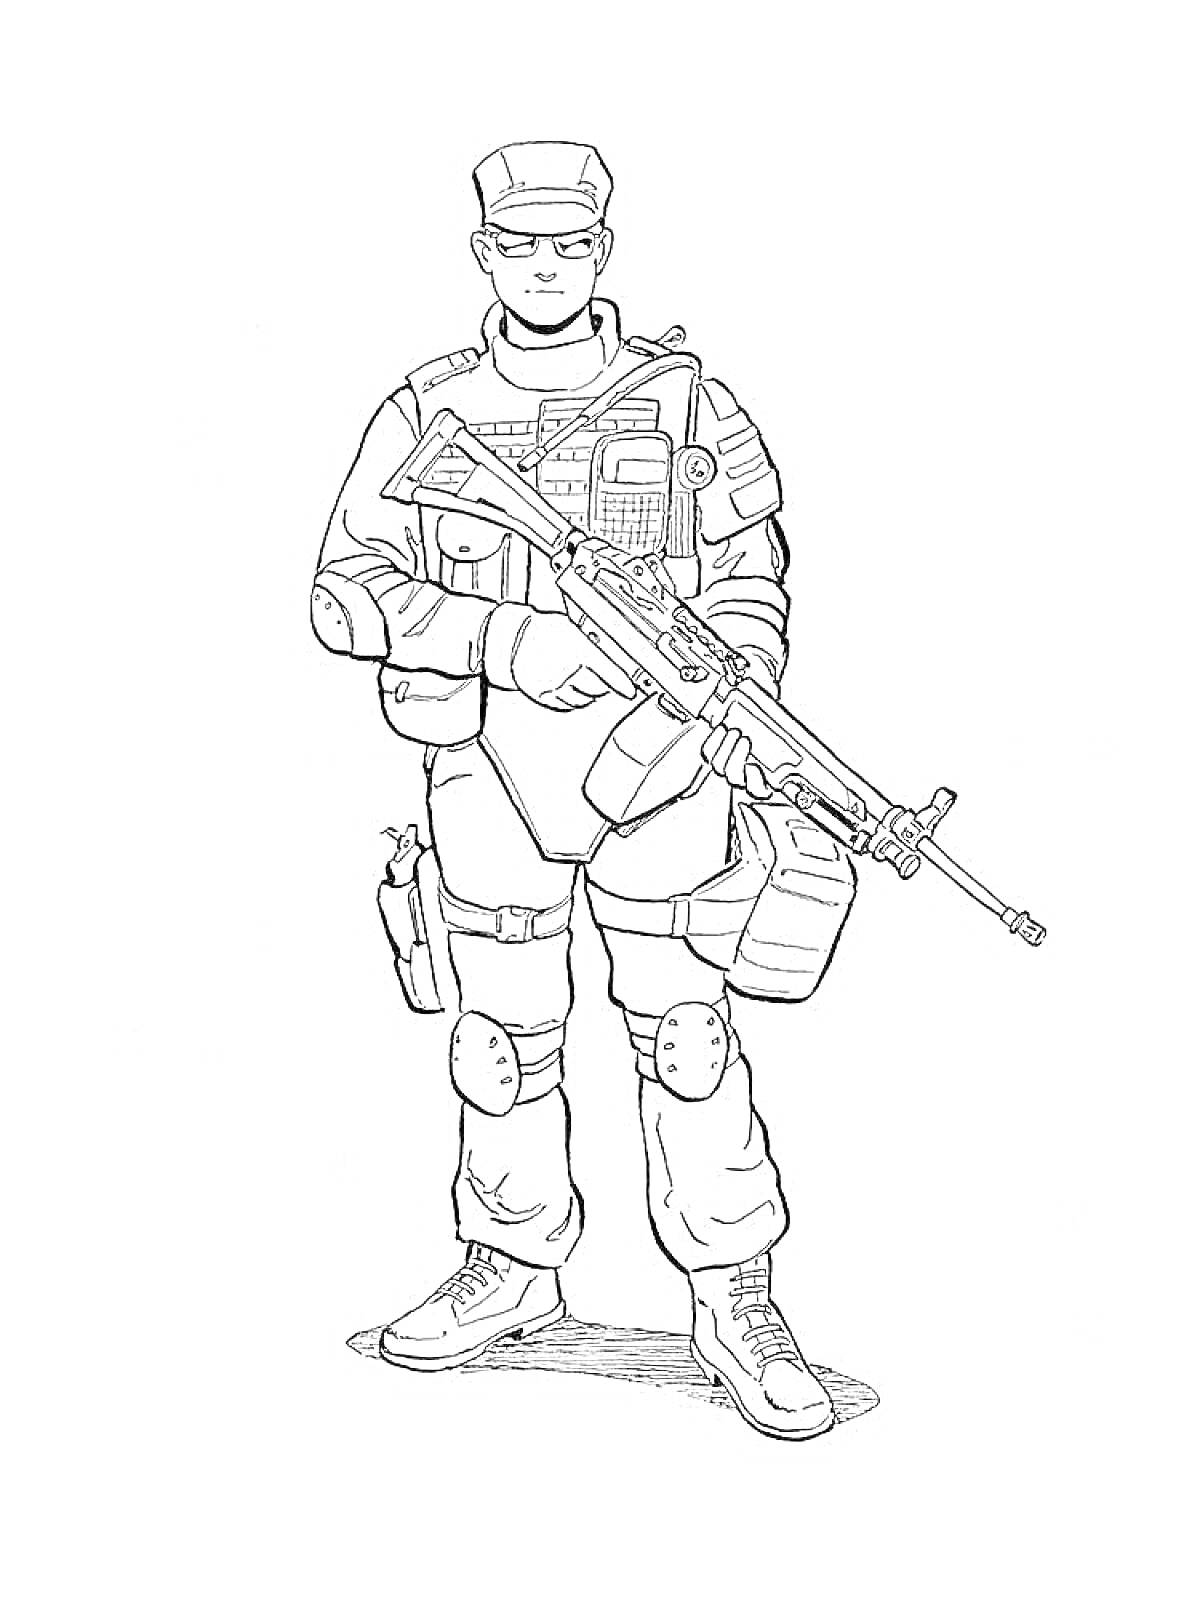 Солдат в военной форме с автоматом, патронташами, ножом на бедре, наколенниками и чехлом через плечо